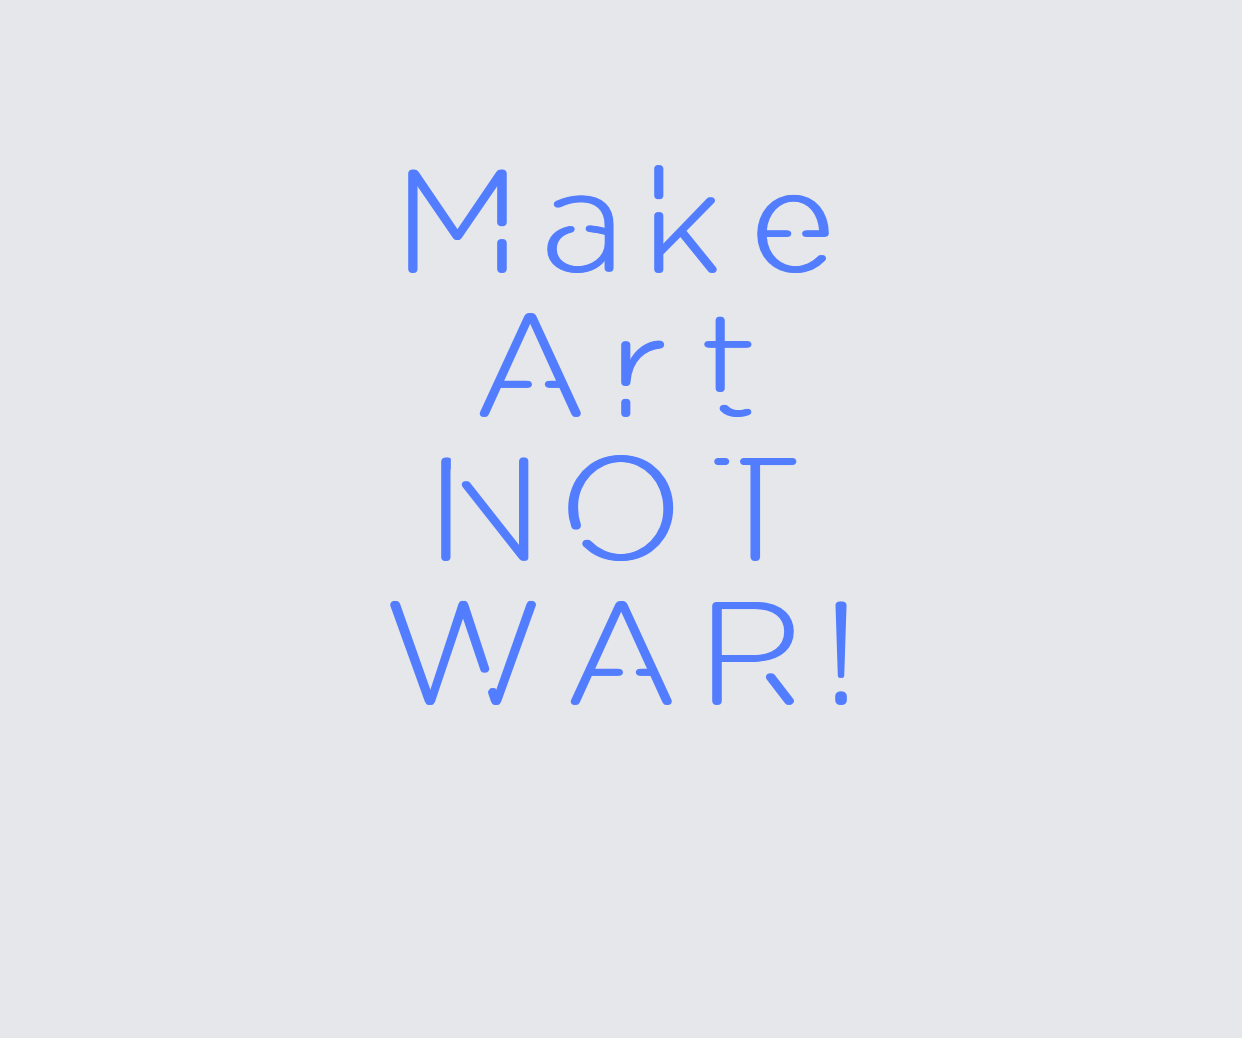 Custom neon sign - Make  Art  NOT  WAR!